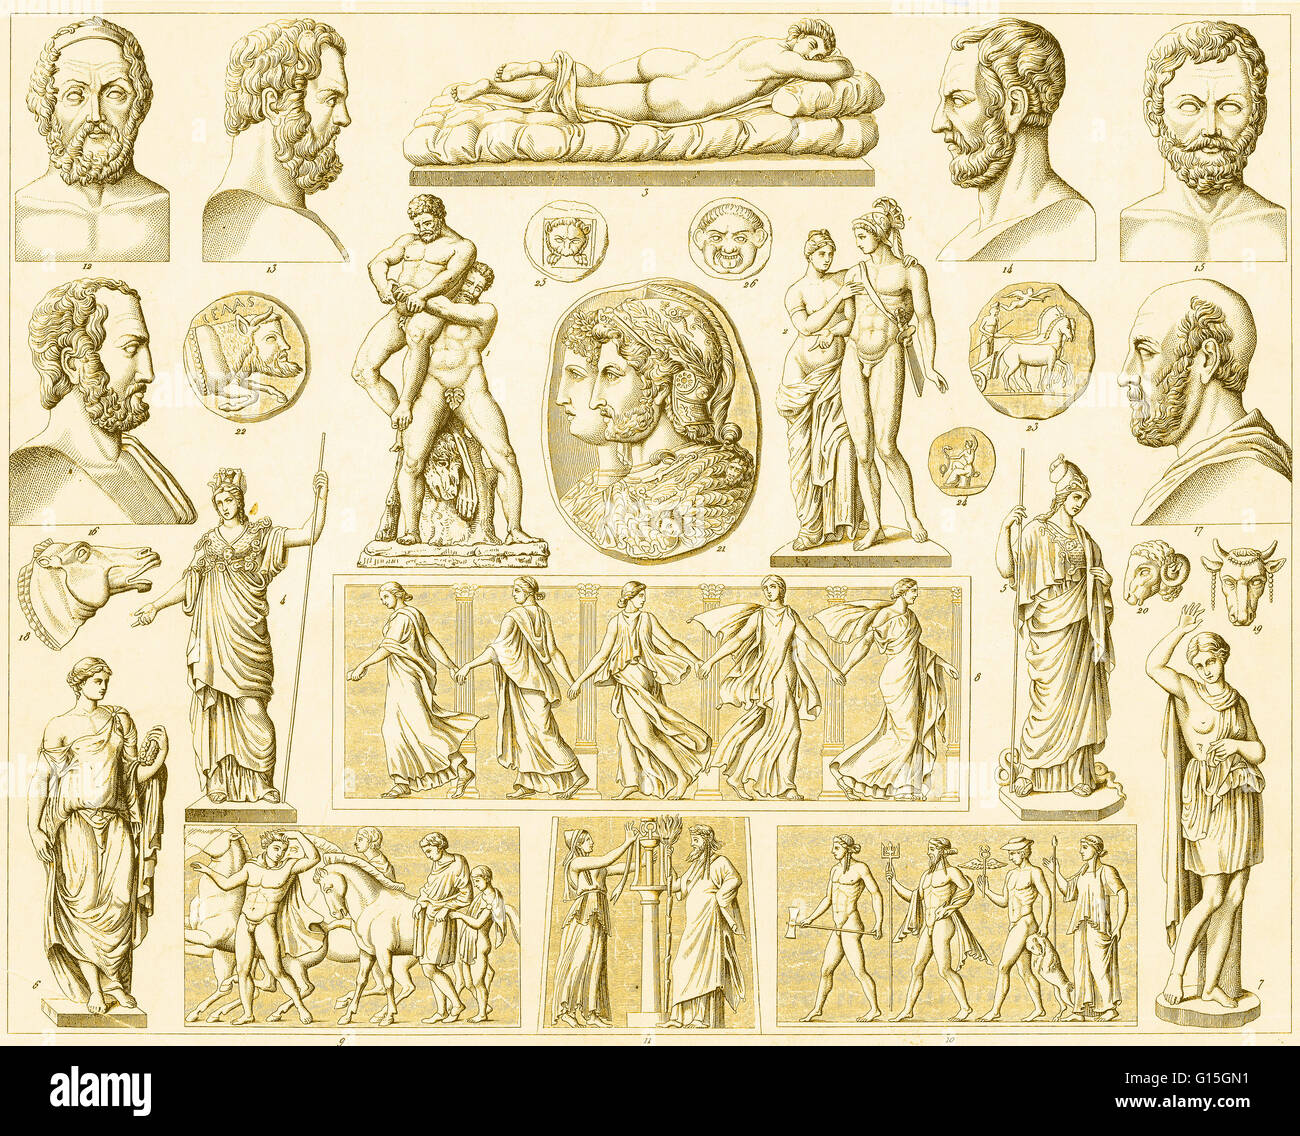 Las figuras de la mitología griega y romana. Foto de stock